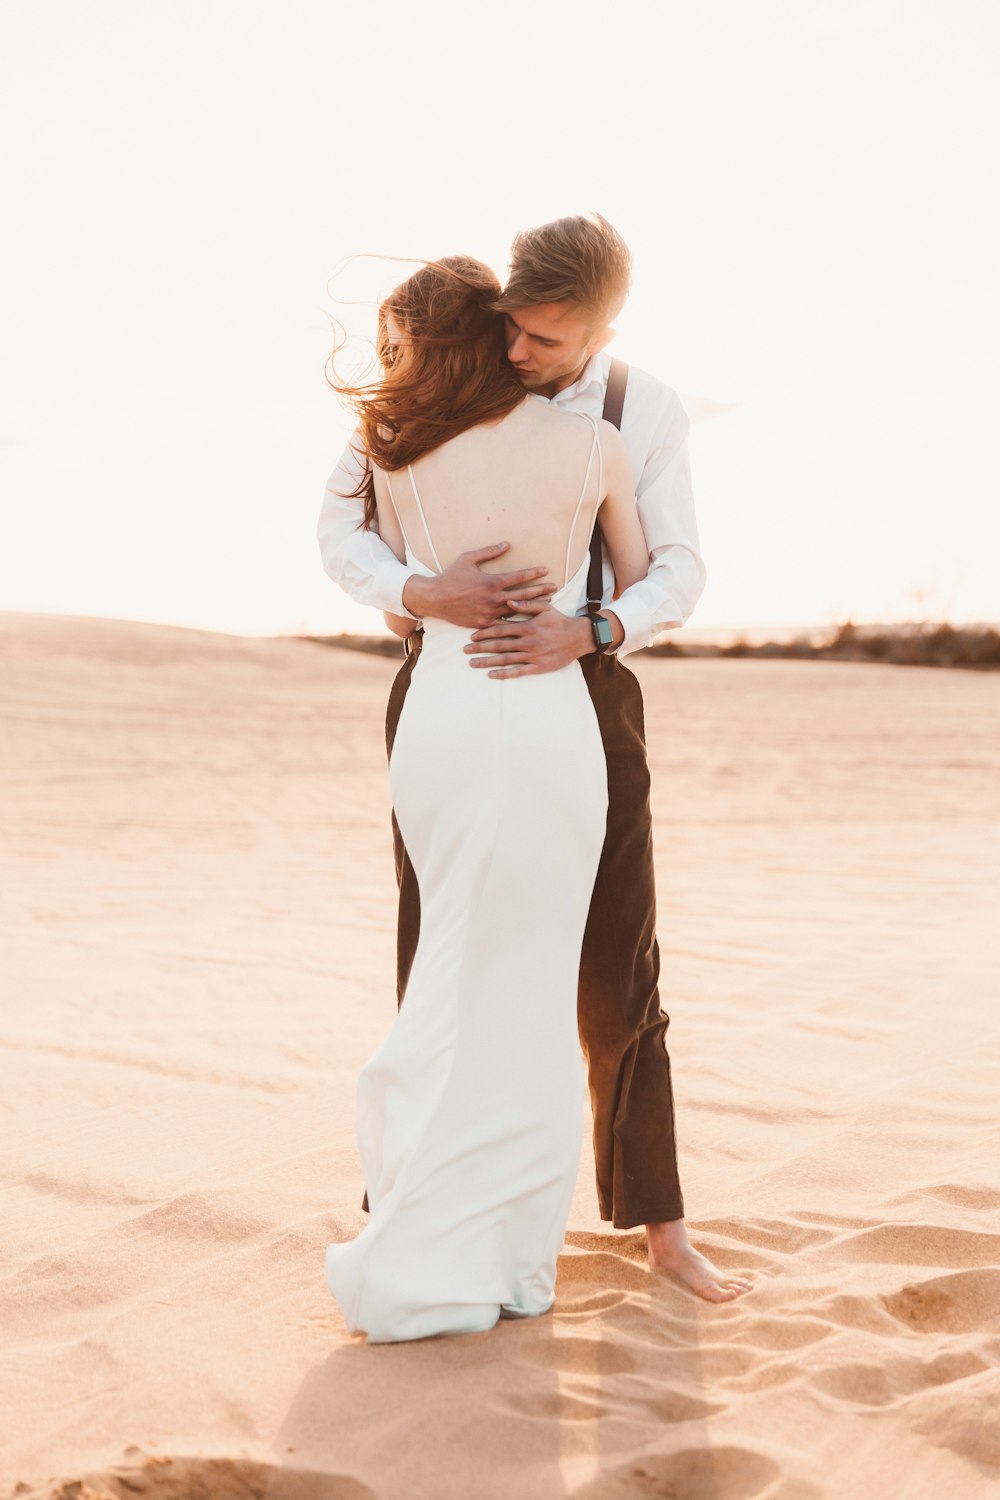 pareja abrazándose en la arena del desierto